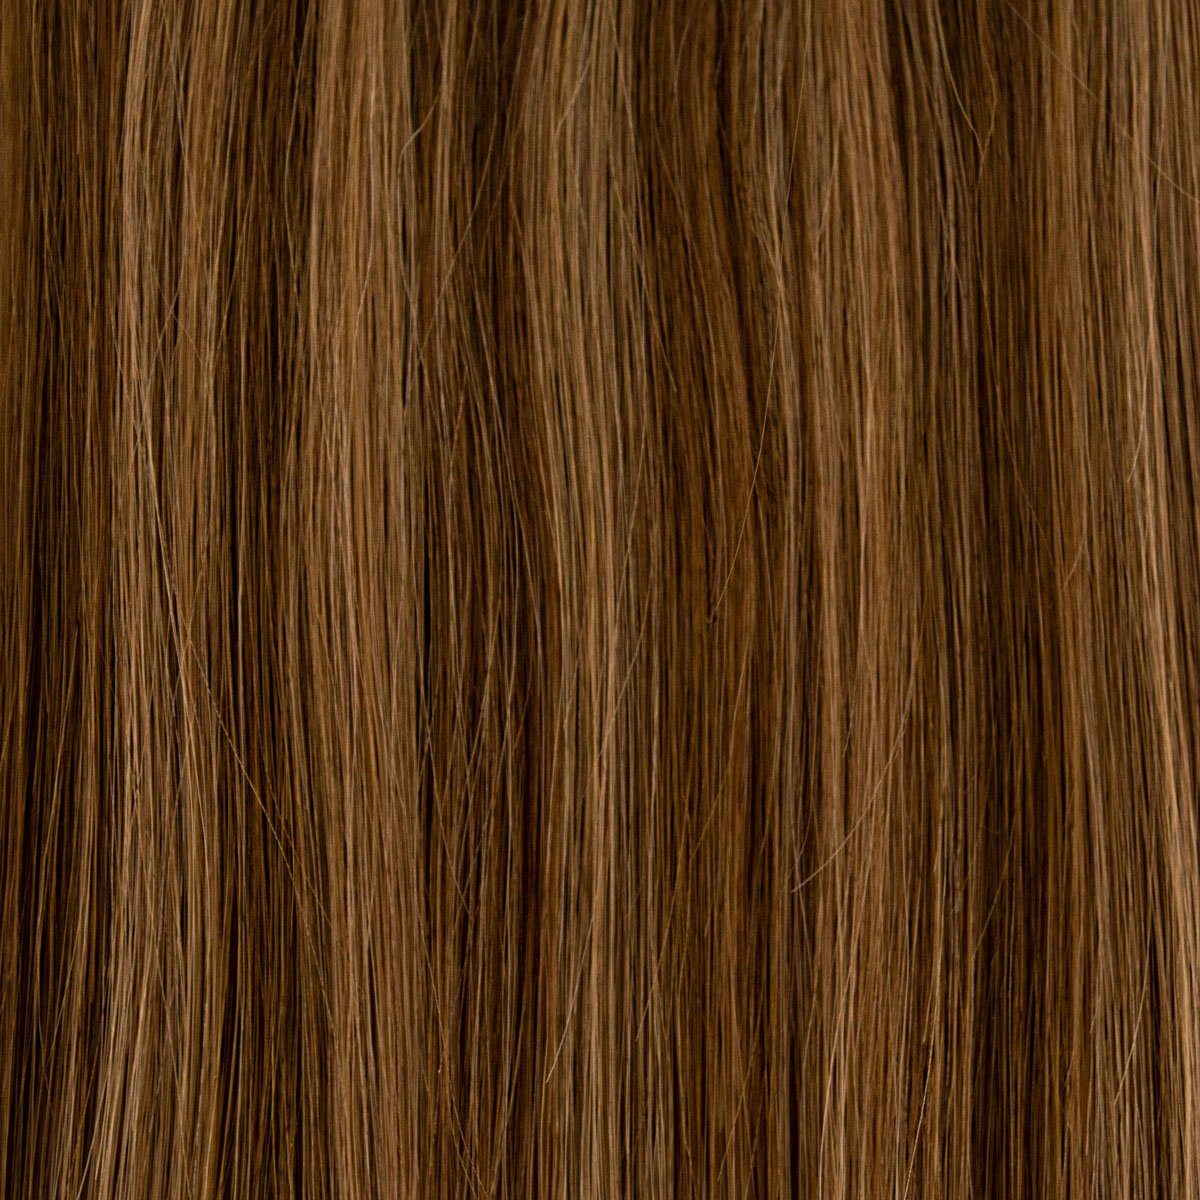 #06/10 Global Extend gesträhnt Echthaar-Extension Haartresse